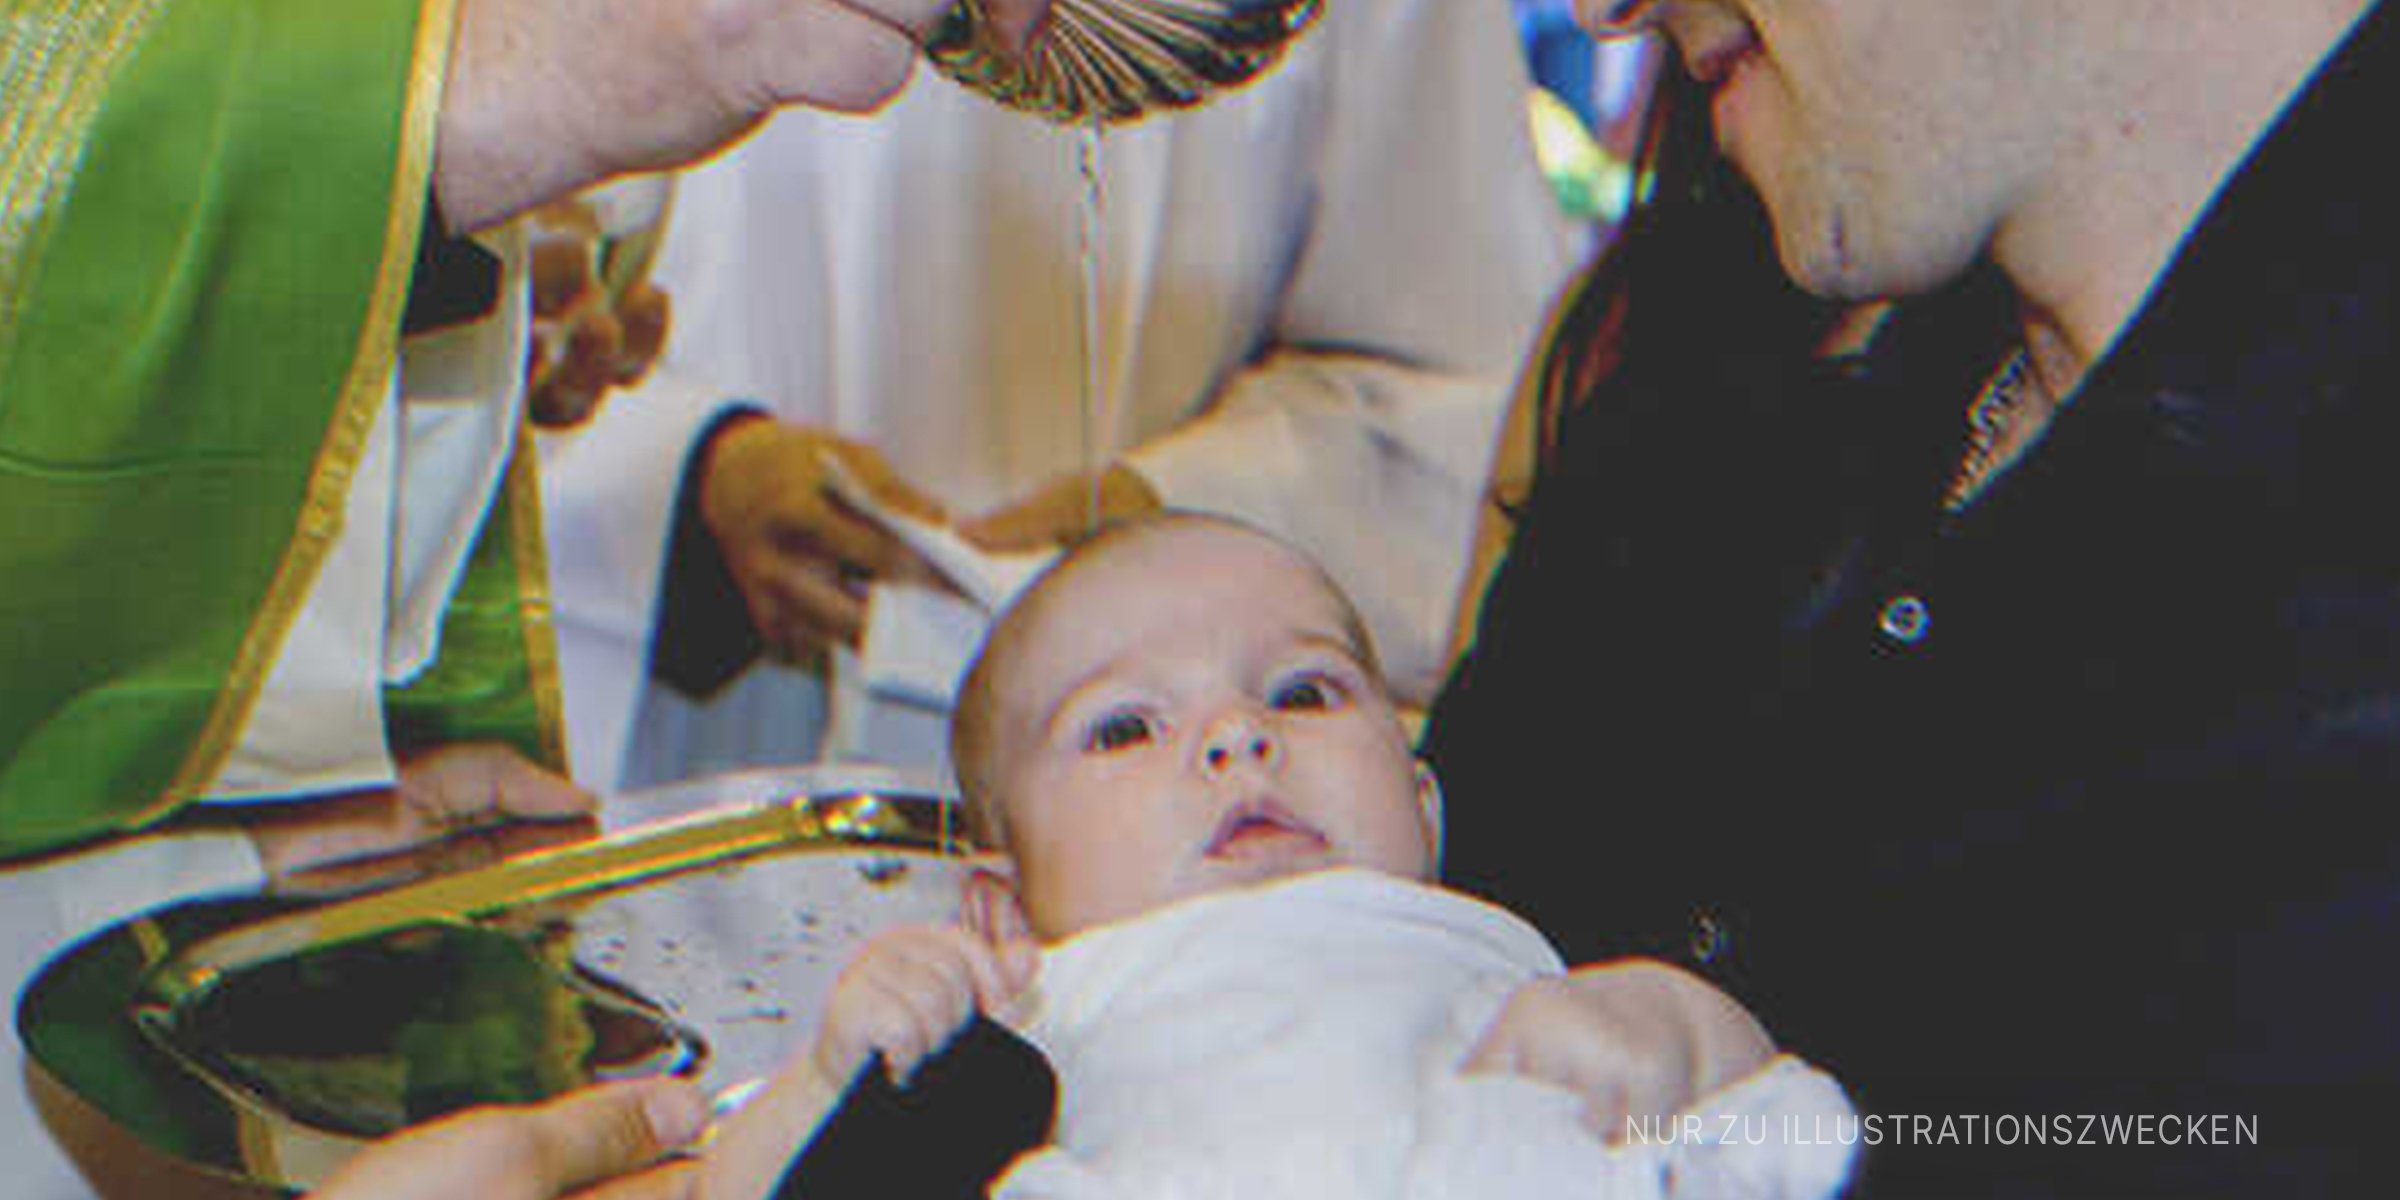 Ein Baby wird getauft. | Quelle: Getty Images